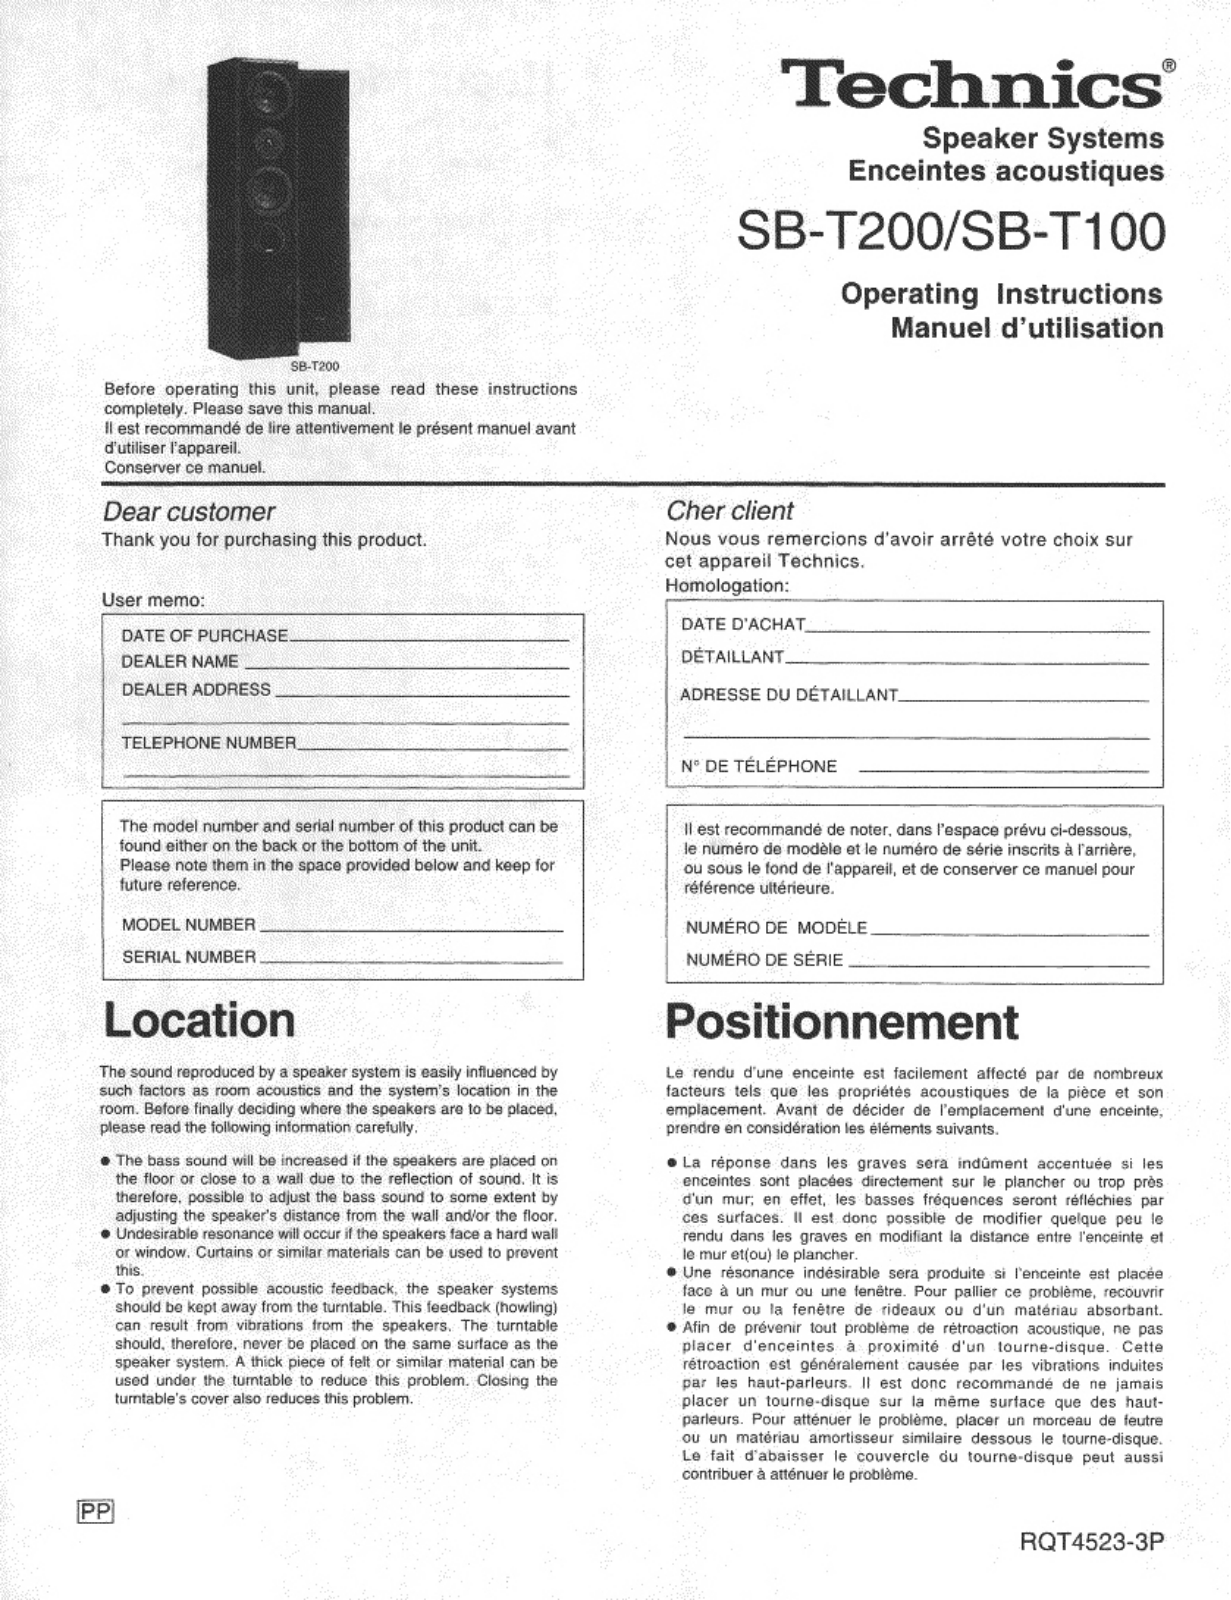 Panasonic SB-T200, SB-T100 User Manual